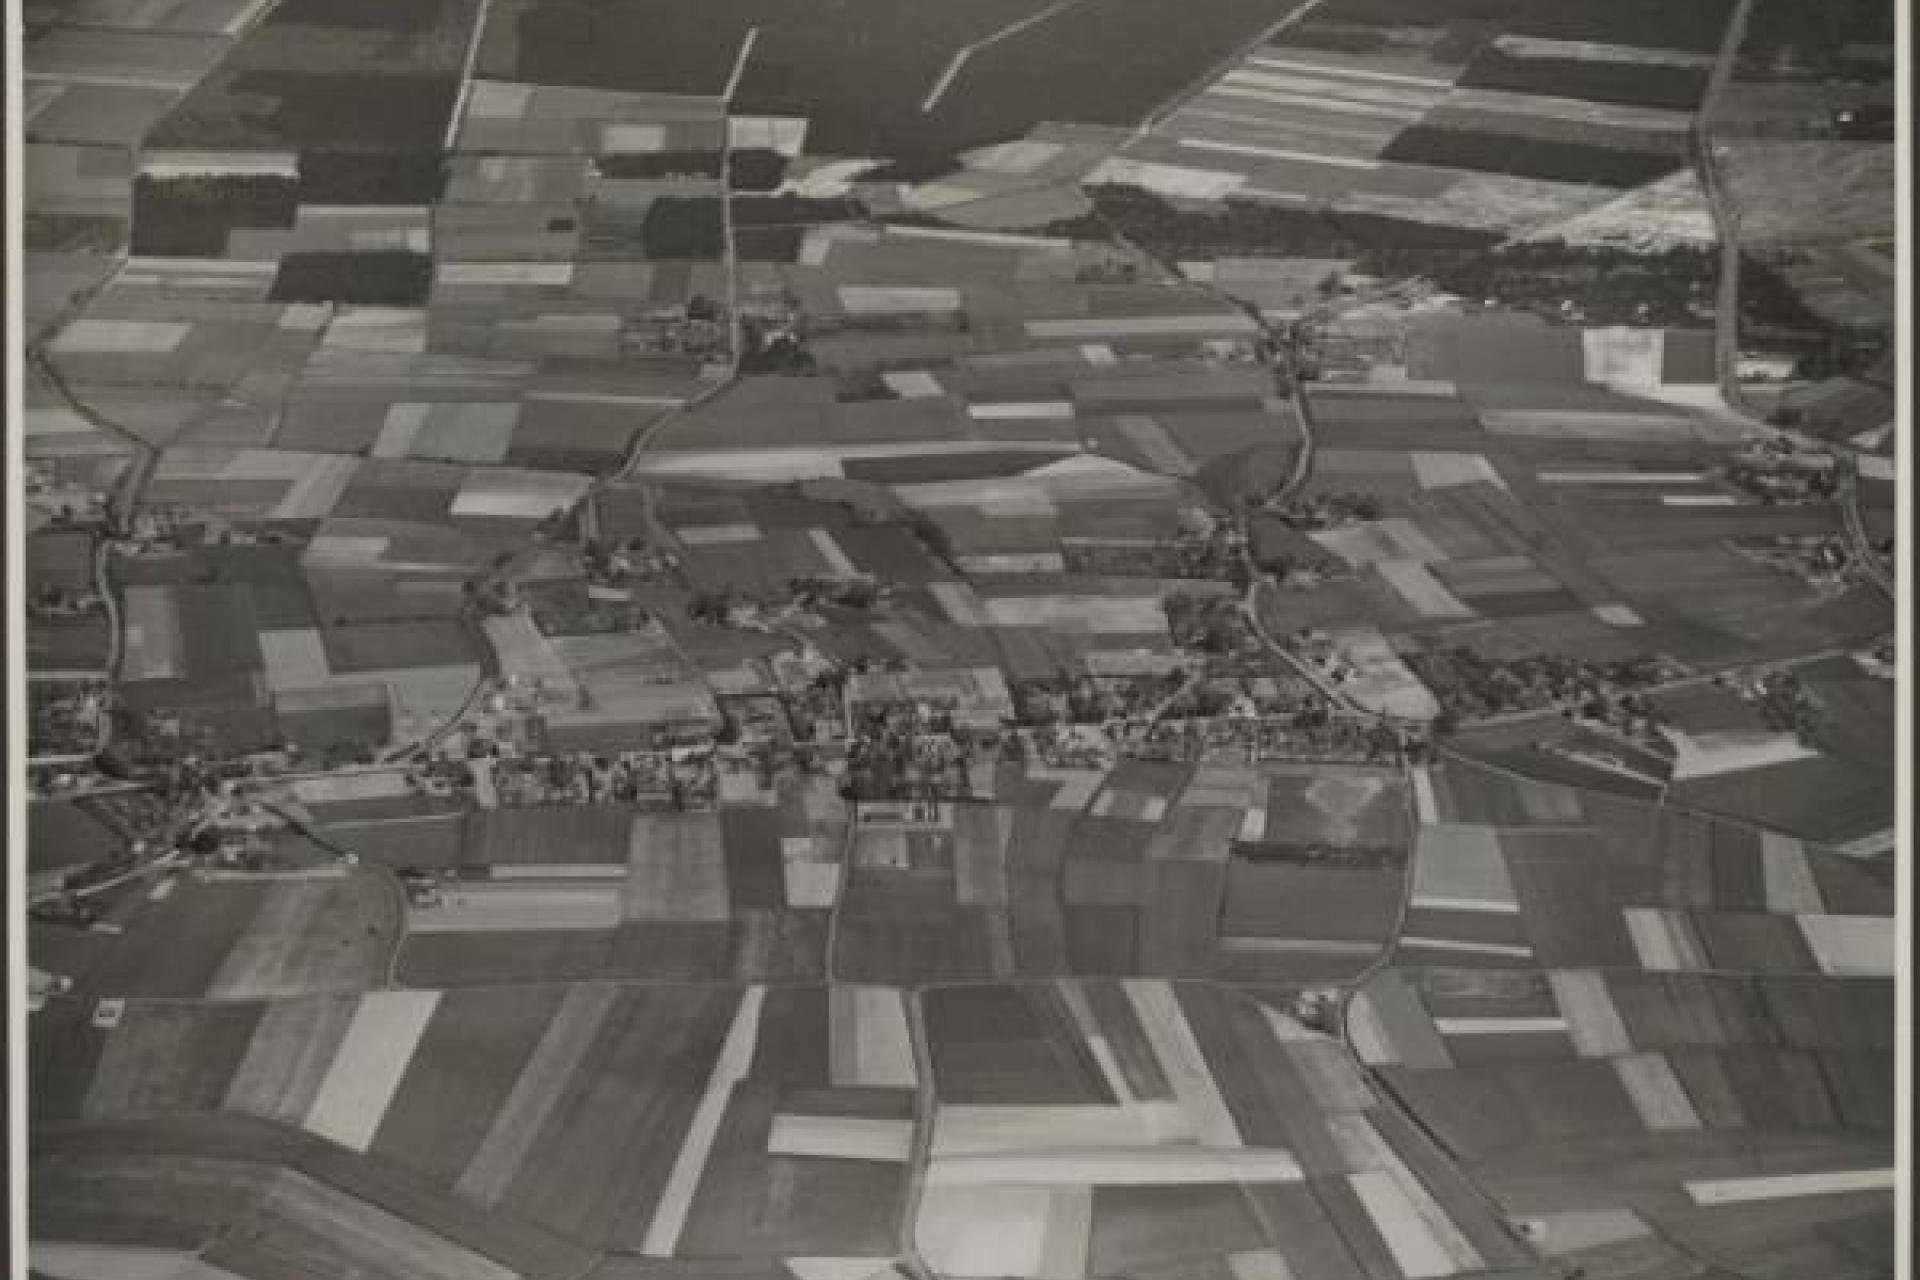 Vergroot afbeelding Luchtfoto met daarop huizen en weilanden